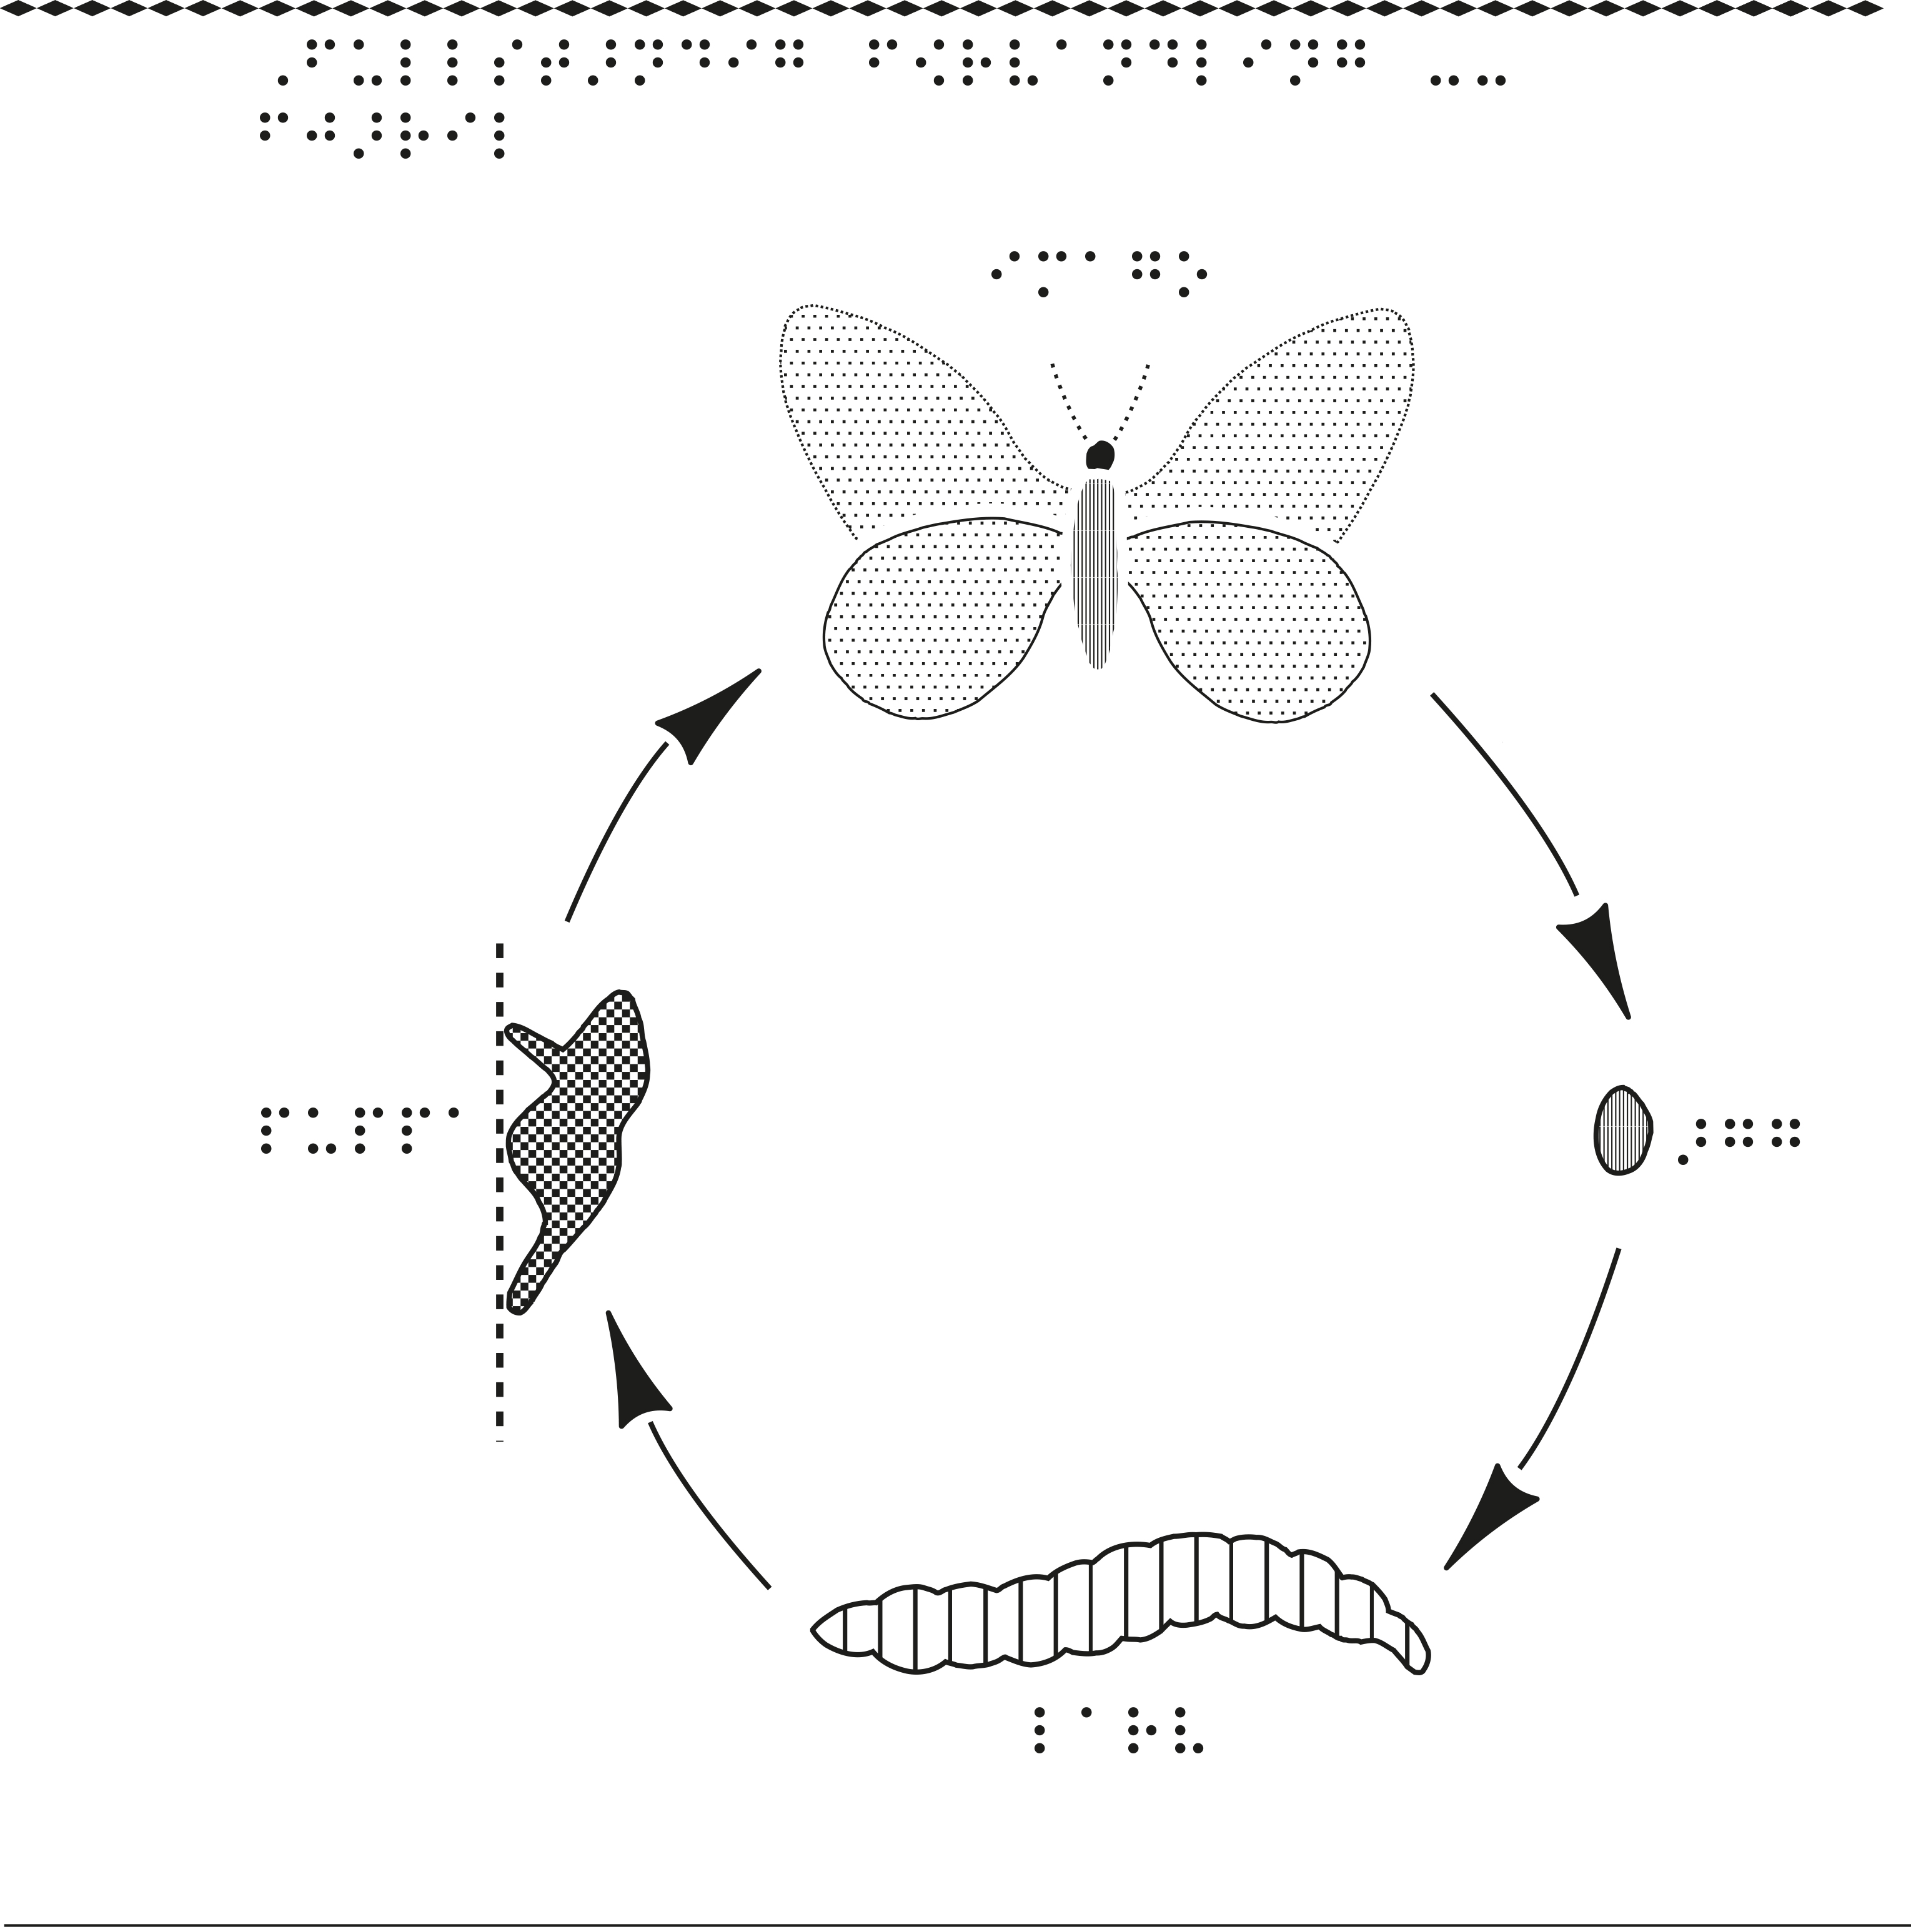 En bild om hur fjärilen förvandlas från en larv till en fjäril.